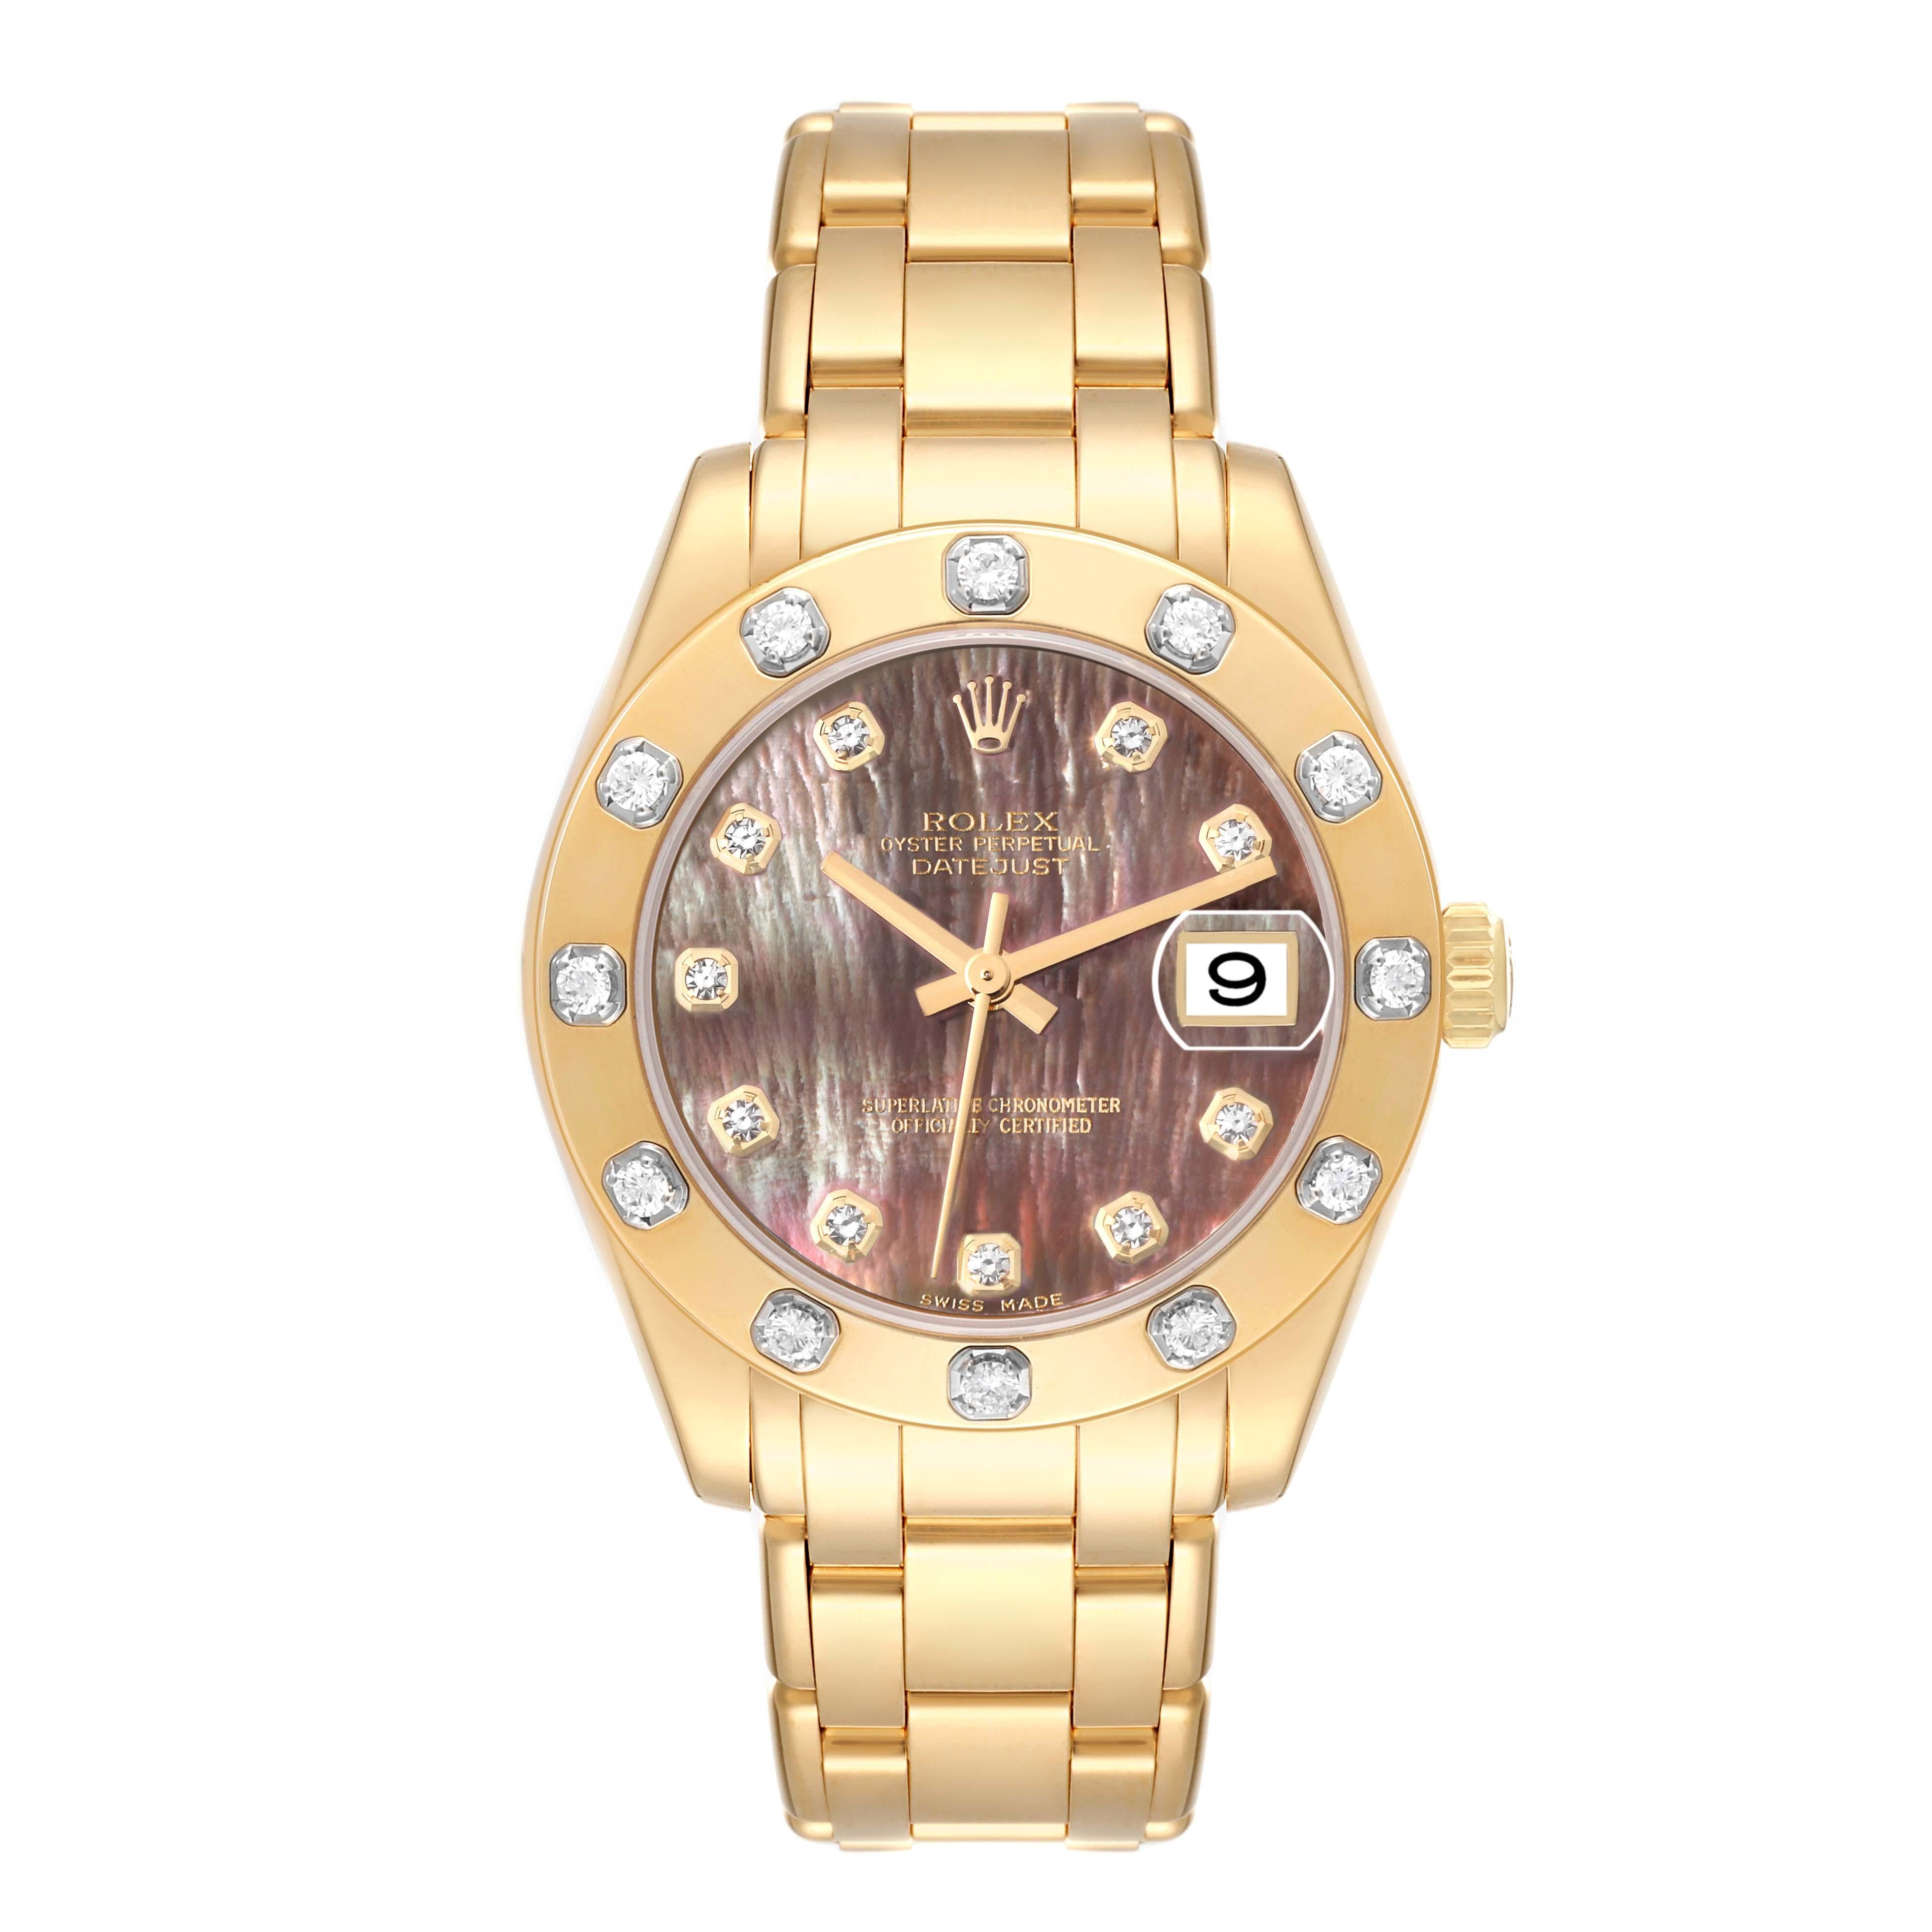 Rolex Pearlmaster Midsize Gelbgold Perlmutt Diamant Damenuhr 81318. Offiziell zertifiziertes Chronometer-Automatikuhrwerk mit Datumsschnellverstellung. Oyster-Gehäuse aus 18 Karat Gelbgold mit einem Durchmesser von 34,0 mm. Rolex Logo auf einer